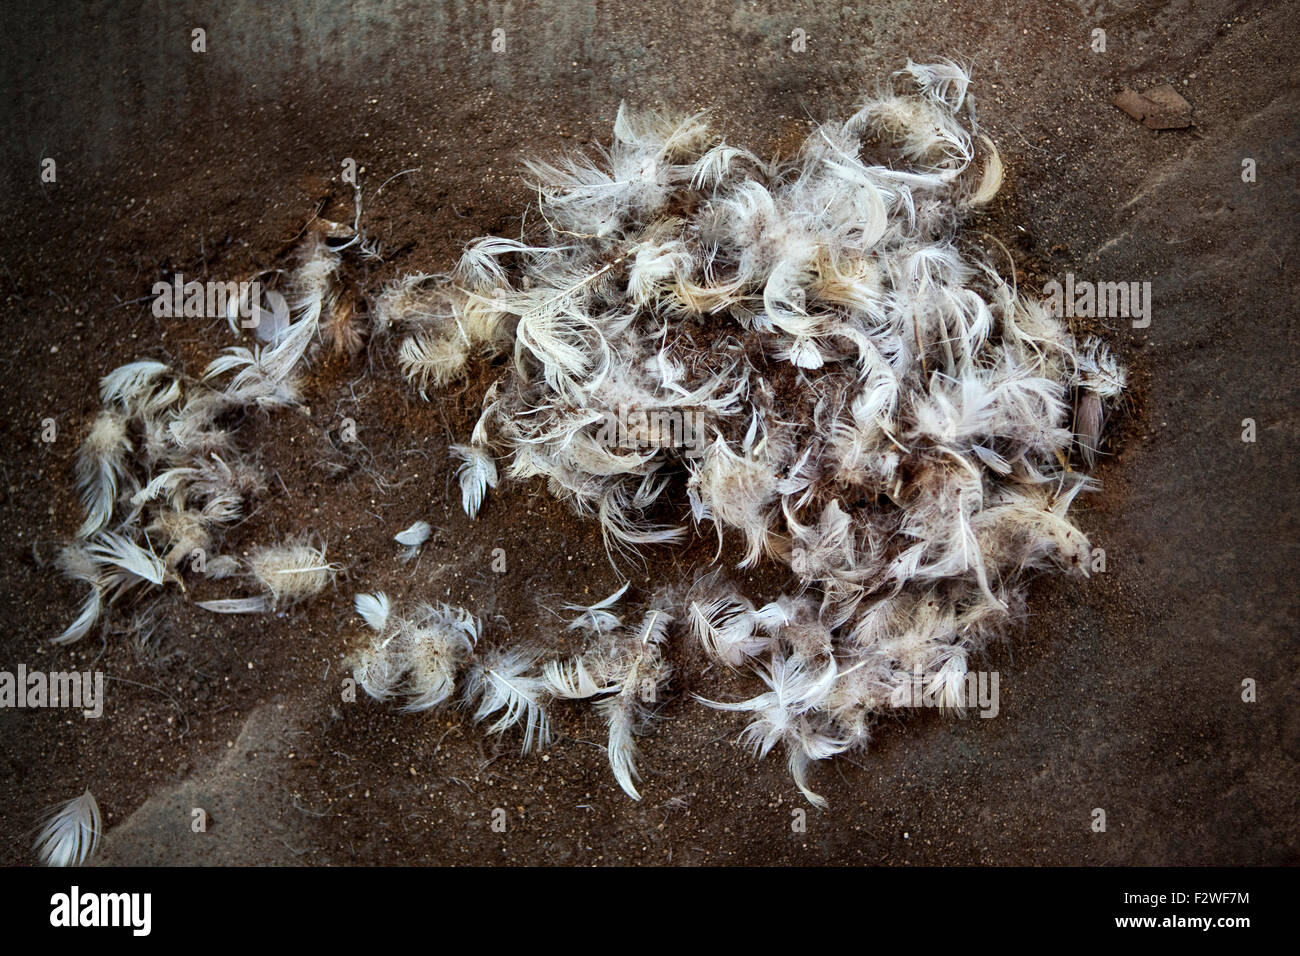 Le plumage des oiseaux sur un sol de la saleté dans une ferme Banque D'Images